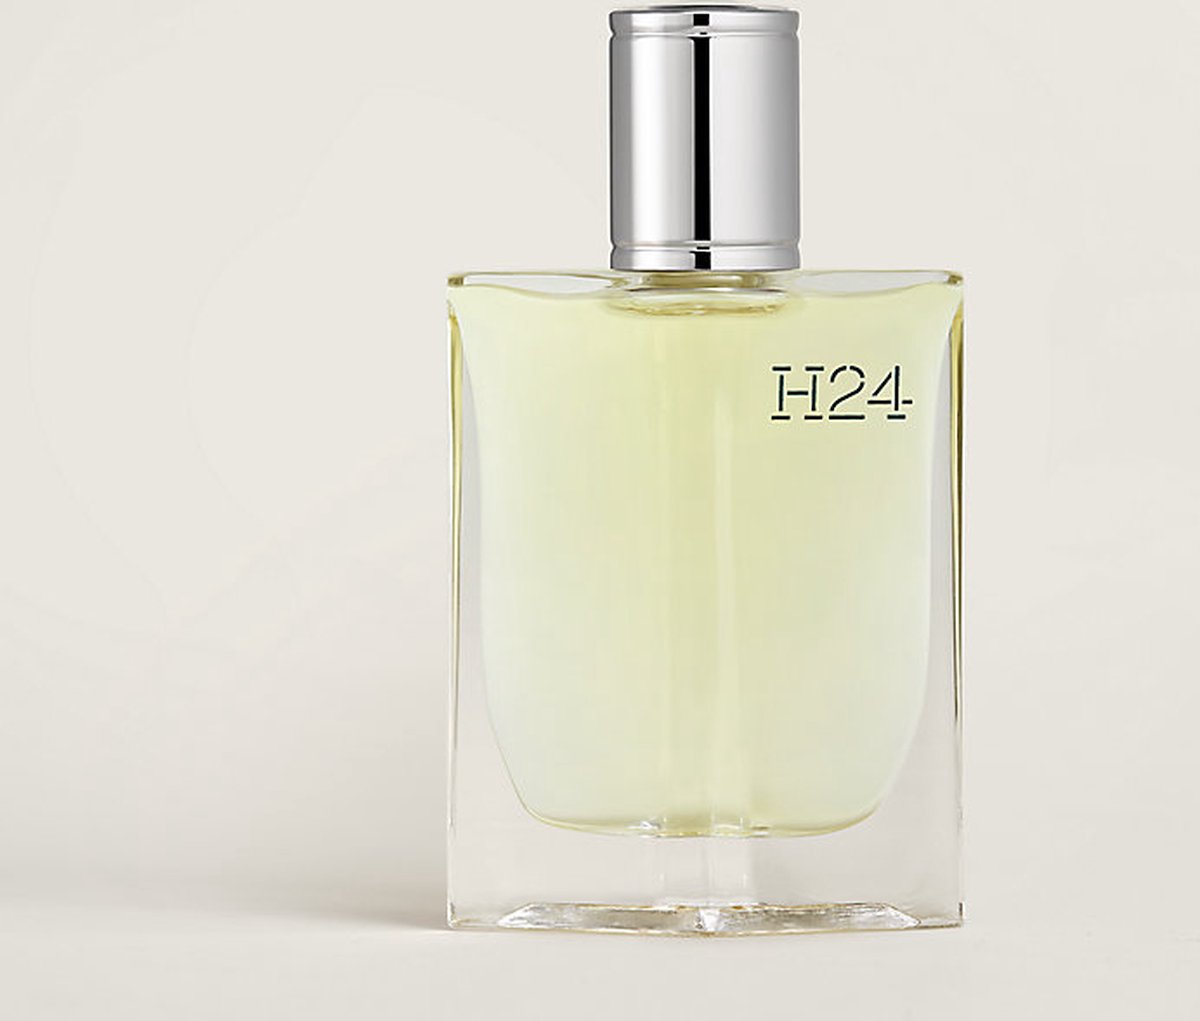 Hermès - H24 - 30 ml - Eau de Toilette